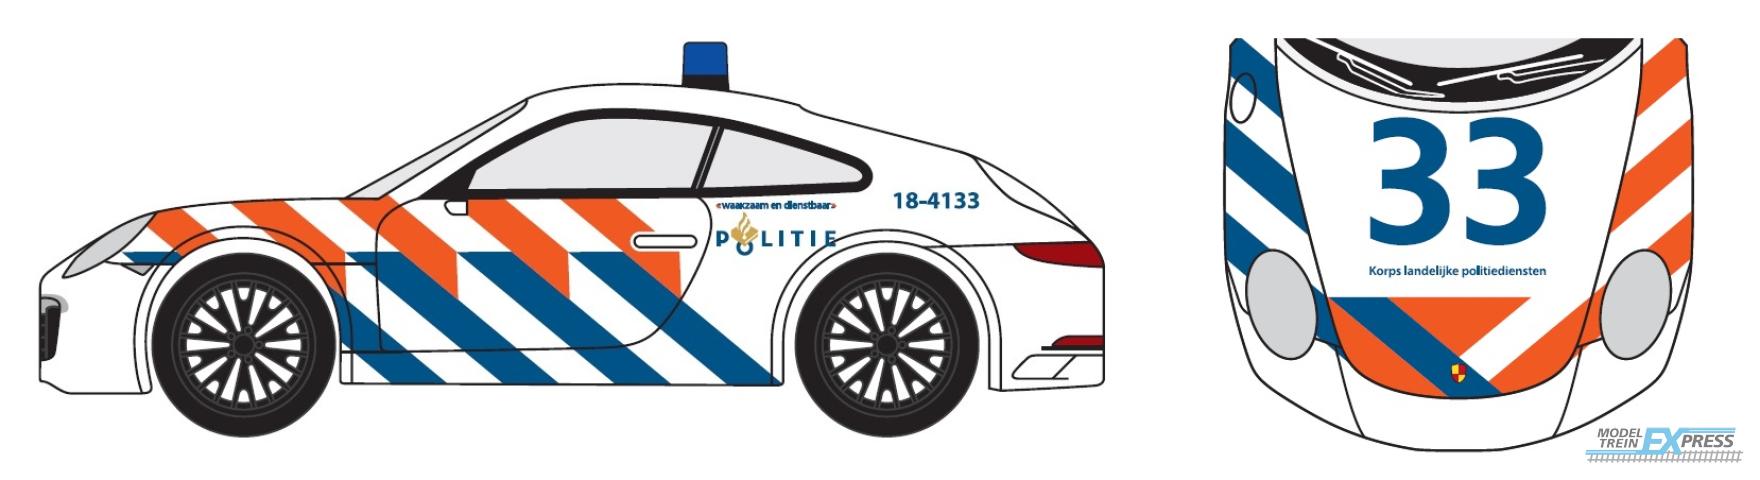 Herpa 955034 Porsche 911 (991) Politie (NL)